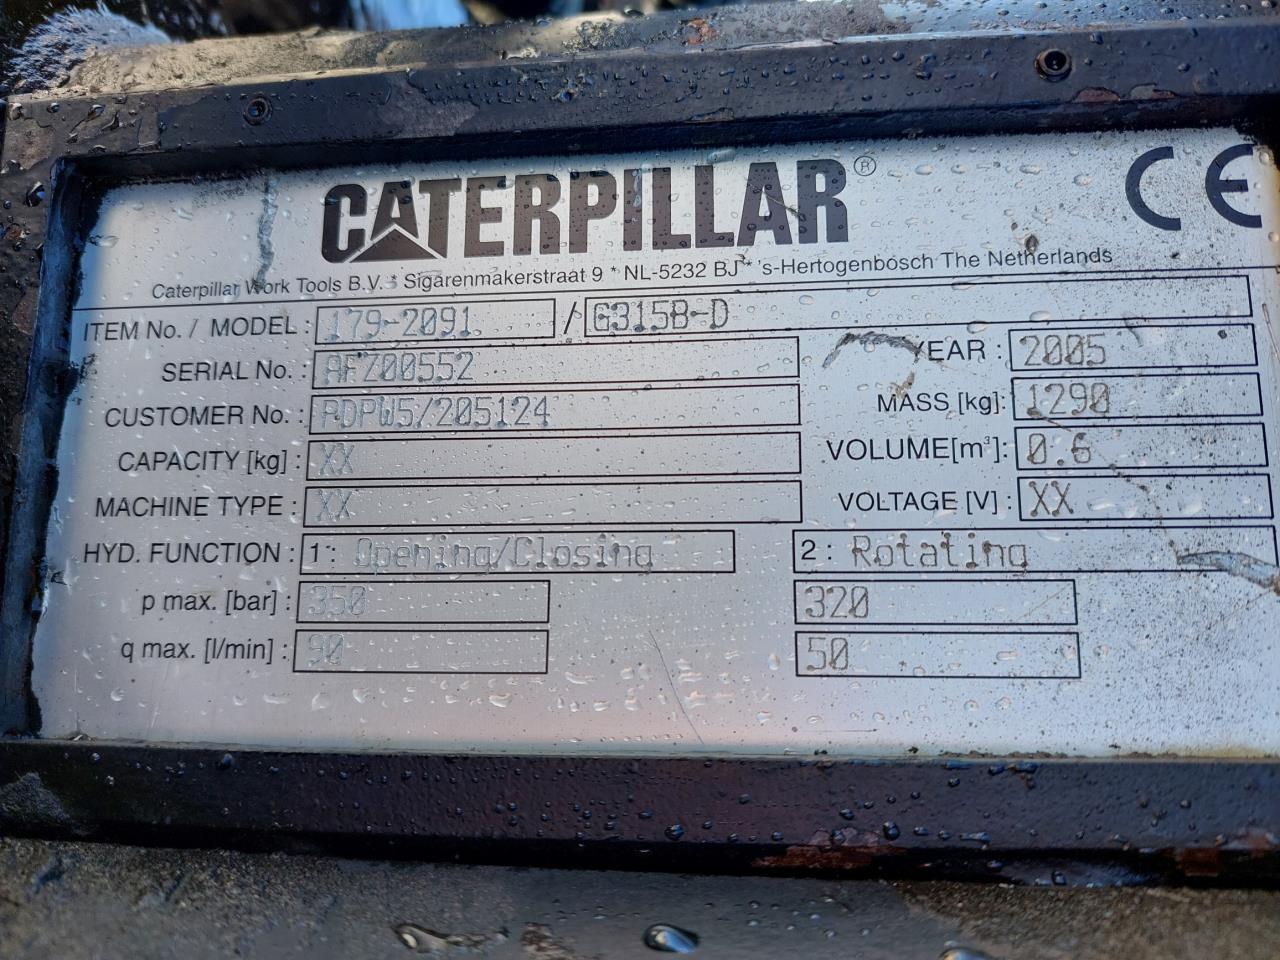 Caterpillar 179-2091